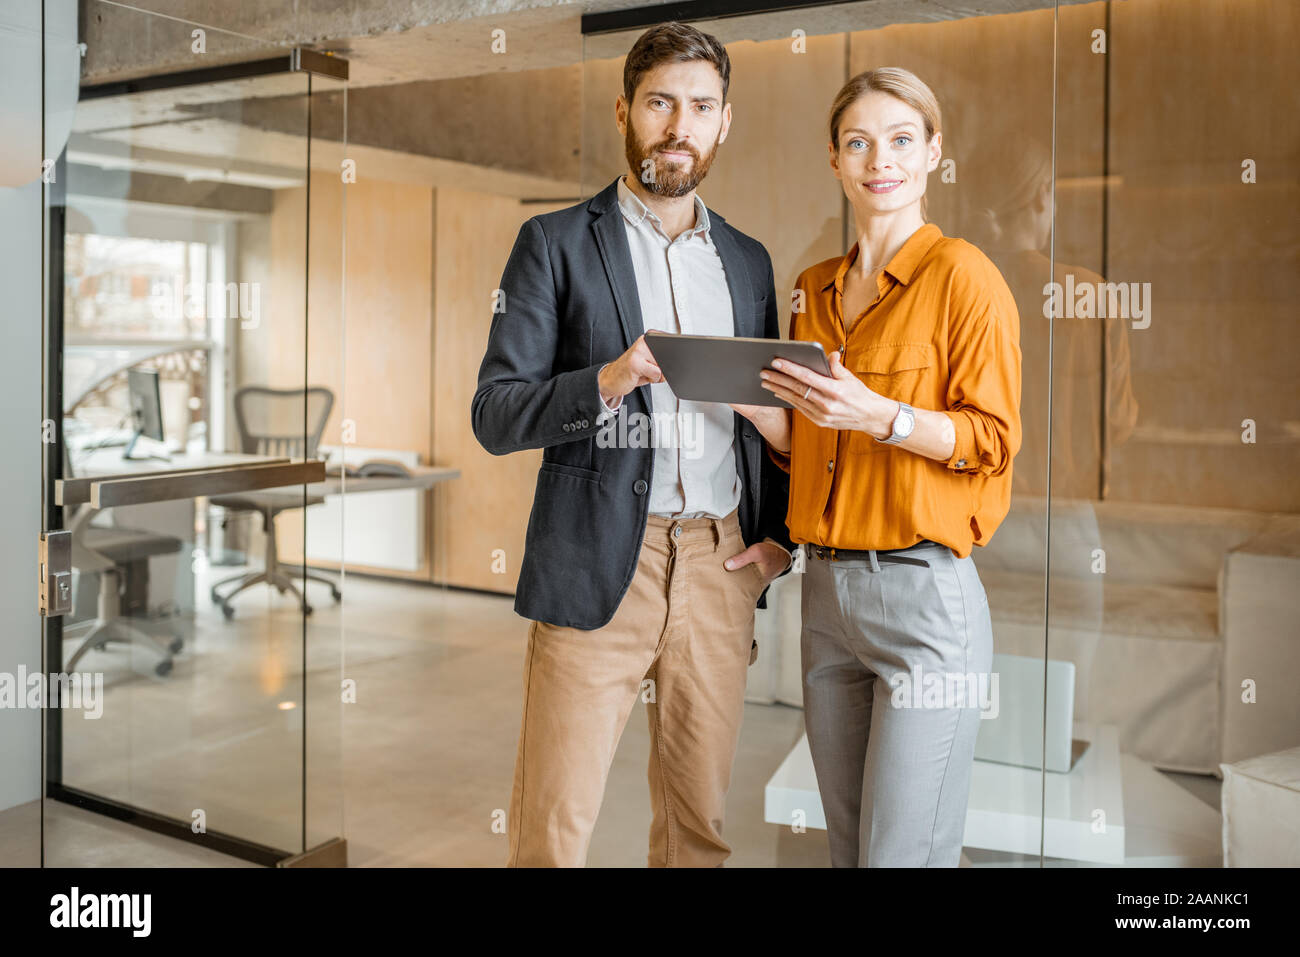 Portrait de deux collègues Standing together with digital tablet in creative studio. Travailler en agence de commercialisation ou concept design studio Banque D'Images